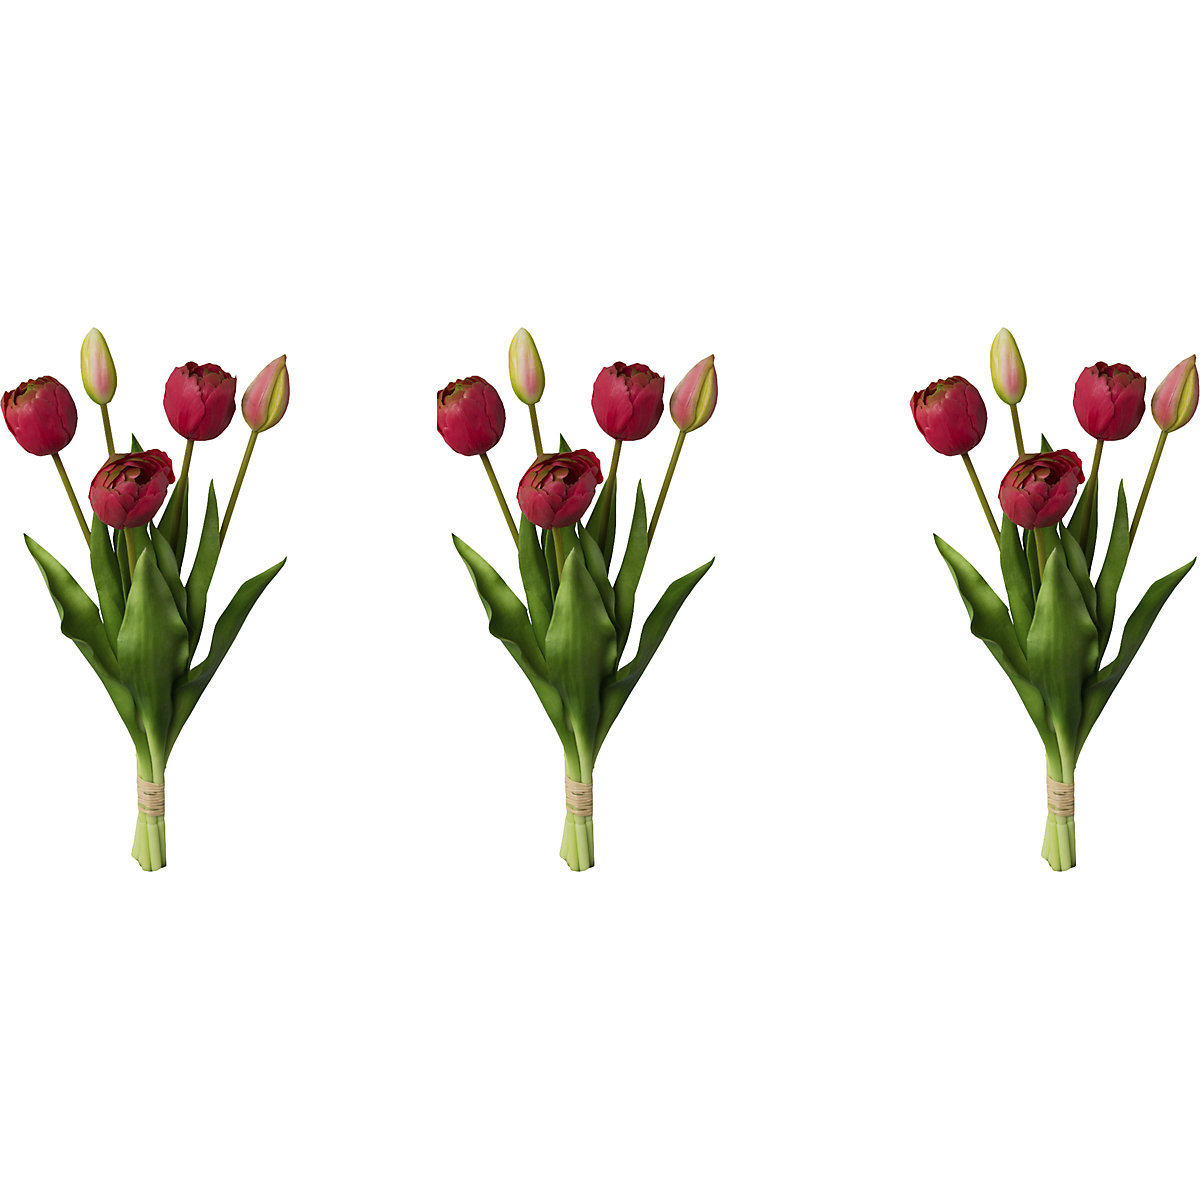 Ramo de 5 tulipas frisadas, toque real